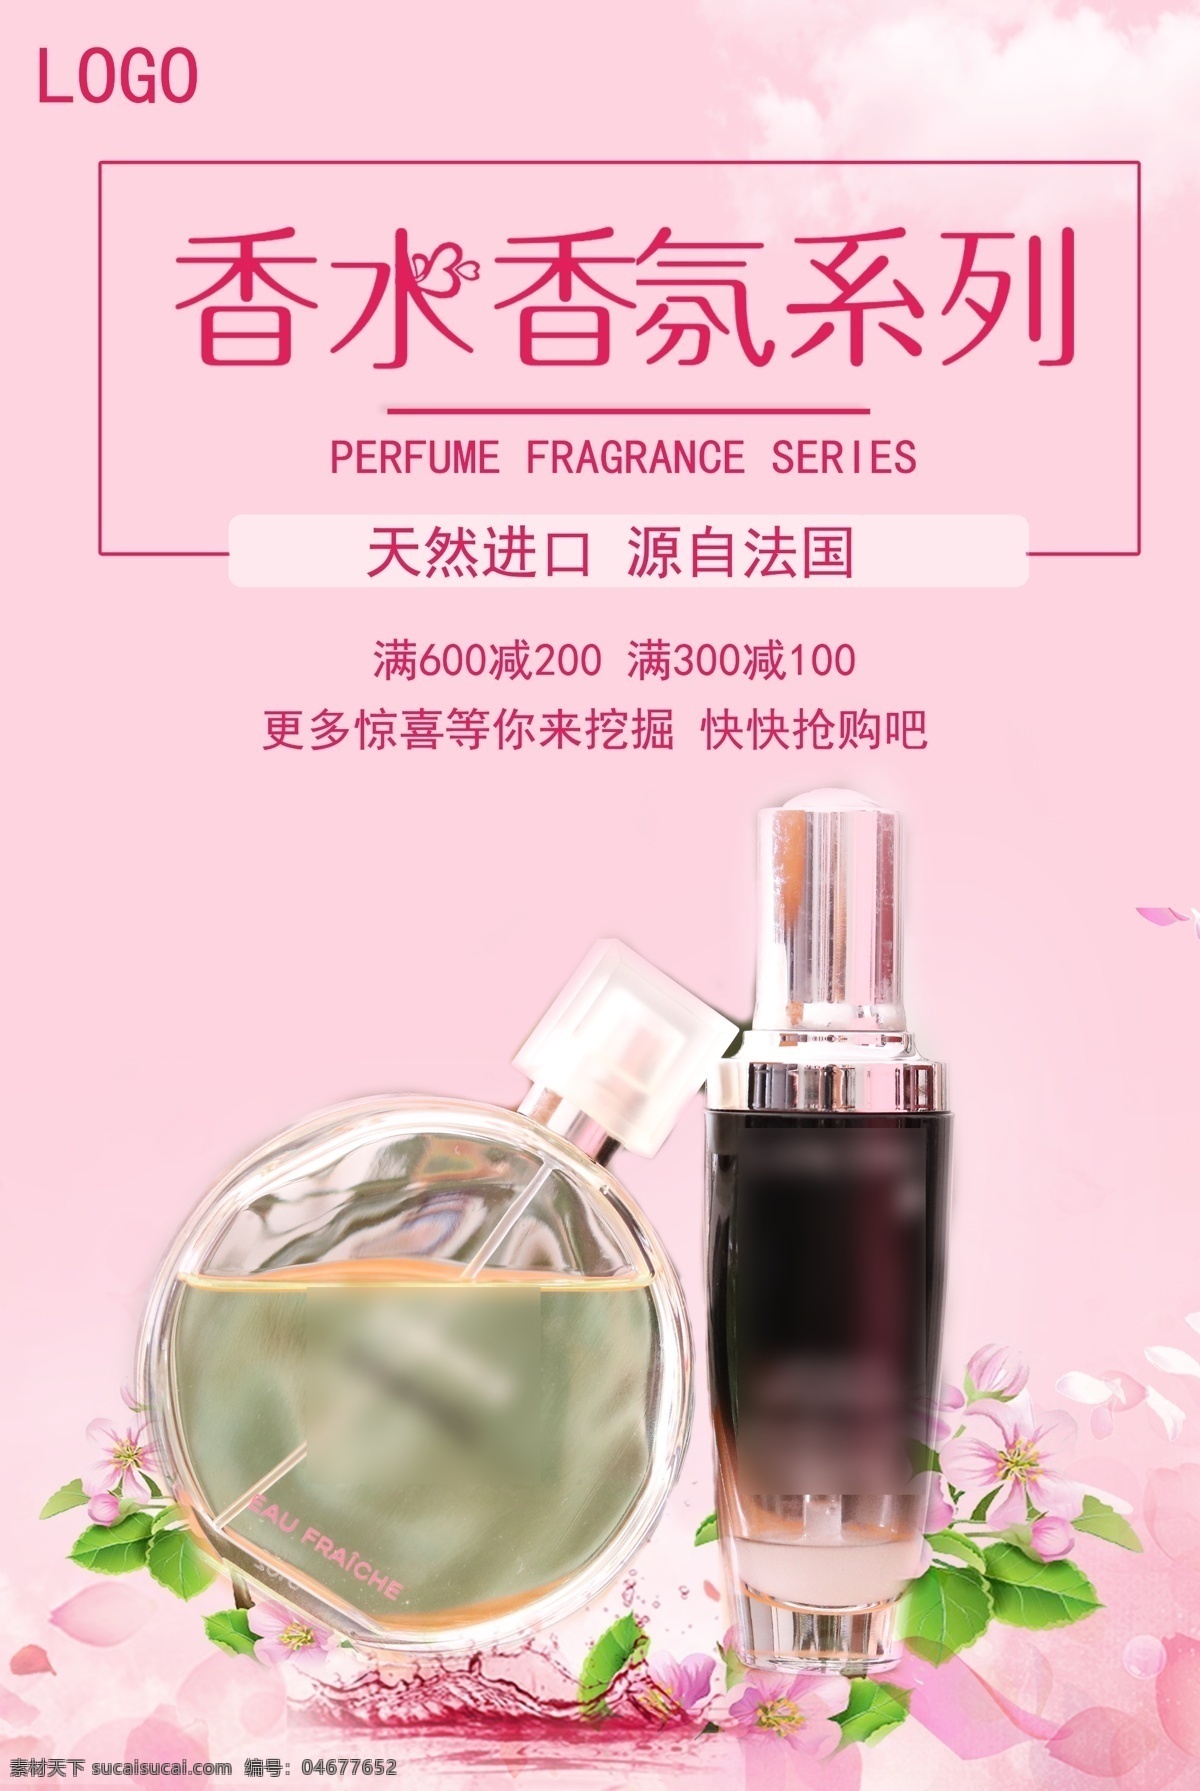 香水 促销 宣传海报 香氛 满减 优惠 粉色 护肤 宣传 海报 化妆品海报